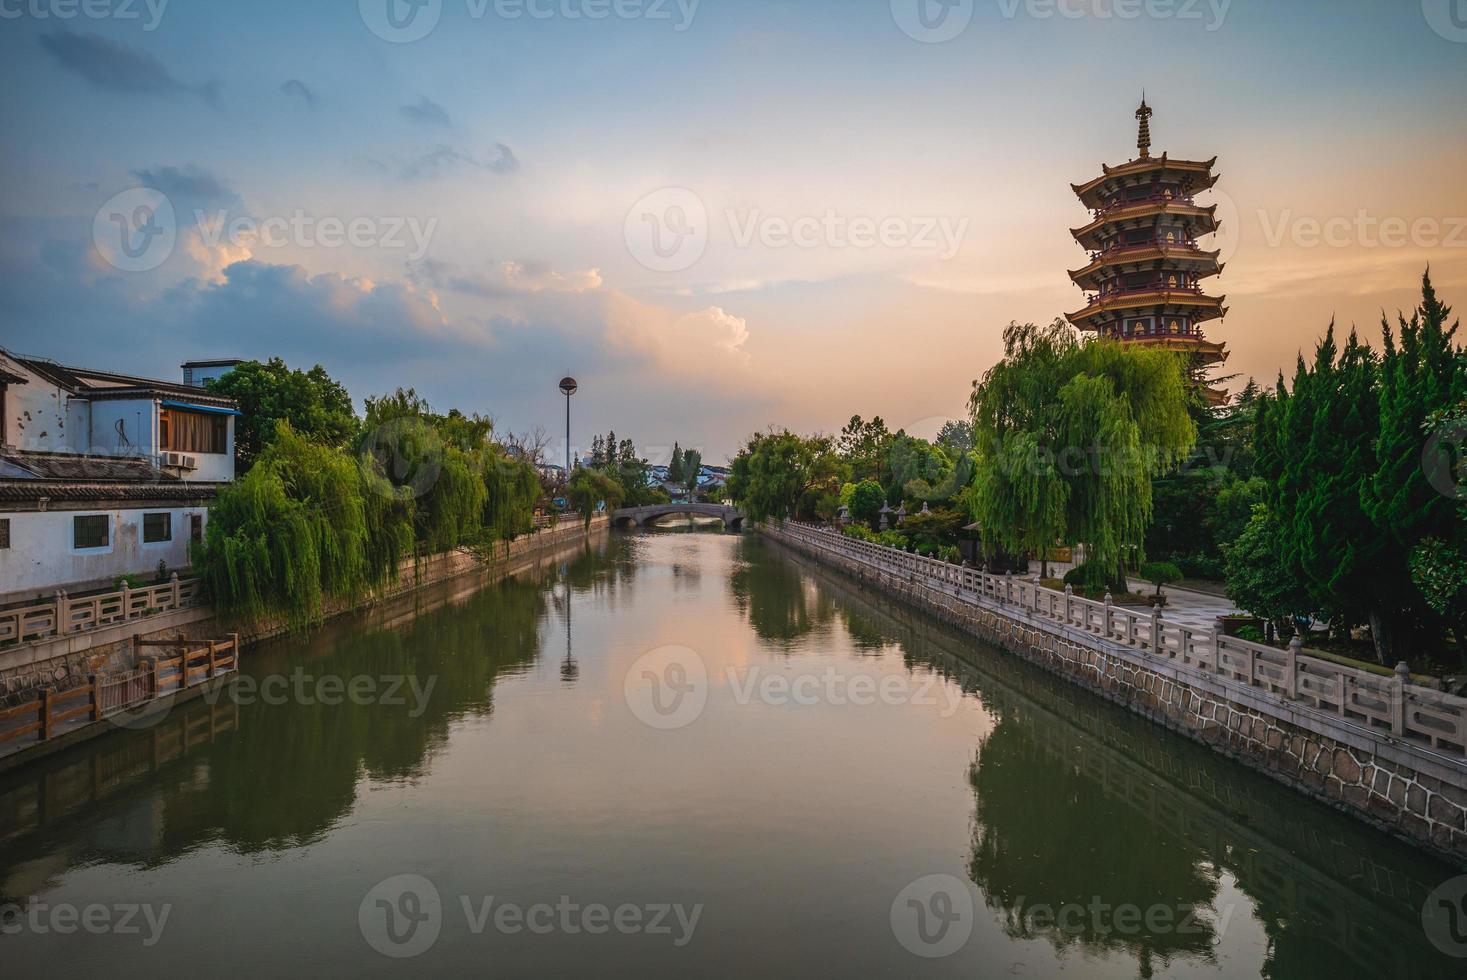 campanile del tempio di qibao nella città antica di qibao a shanghai, in cina foto